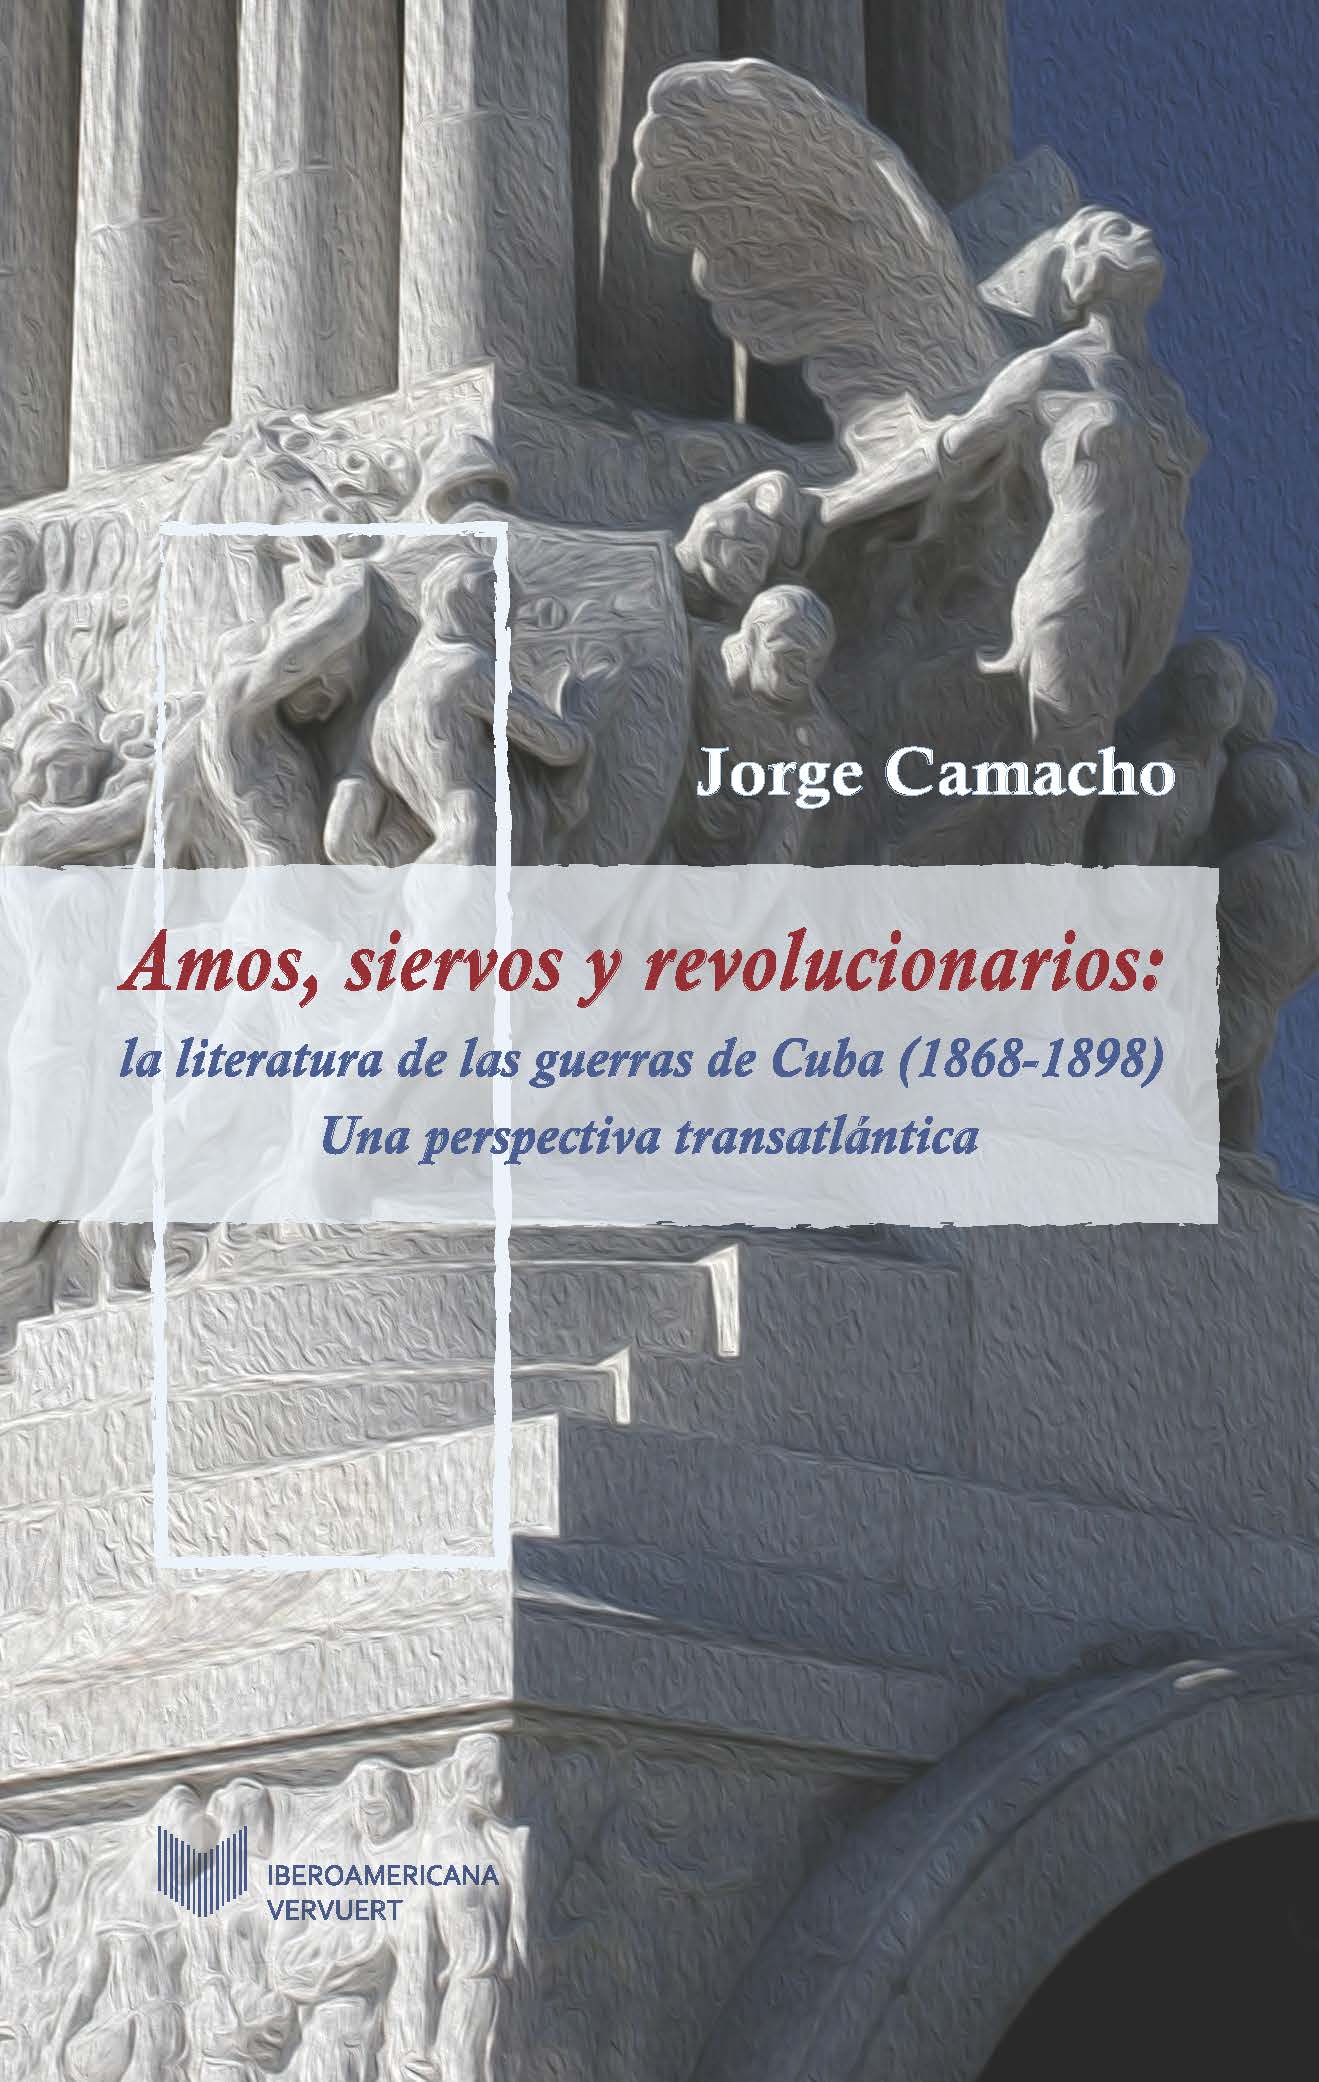 Amos, siervos y revolucionarios: la literatura de las guerras de Cuba (1868-1898)